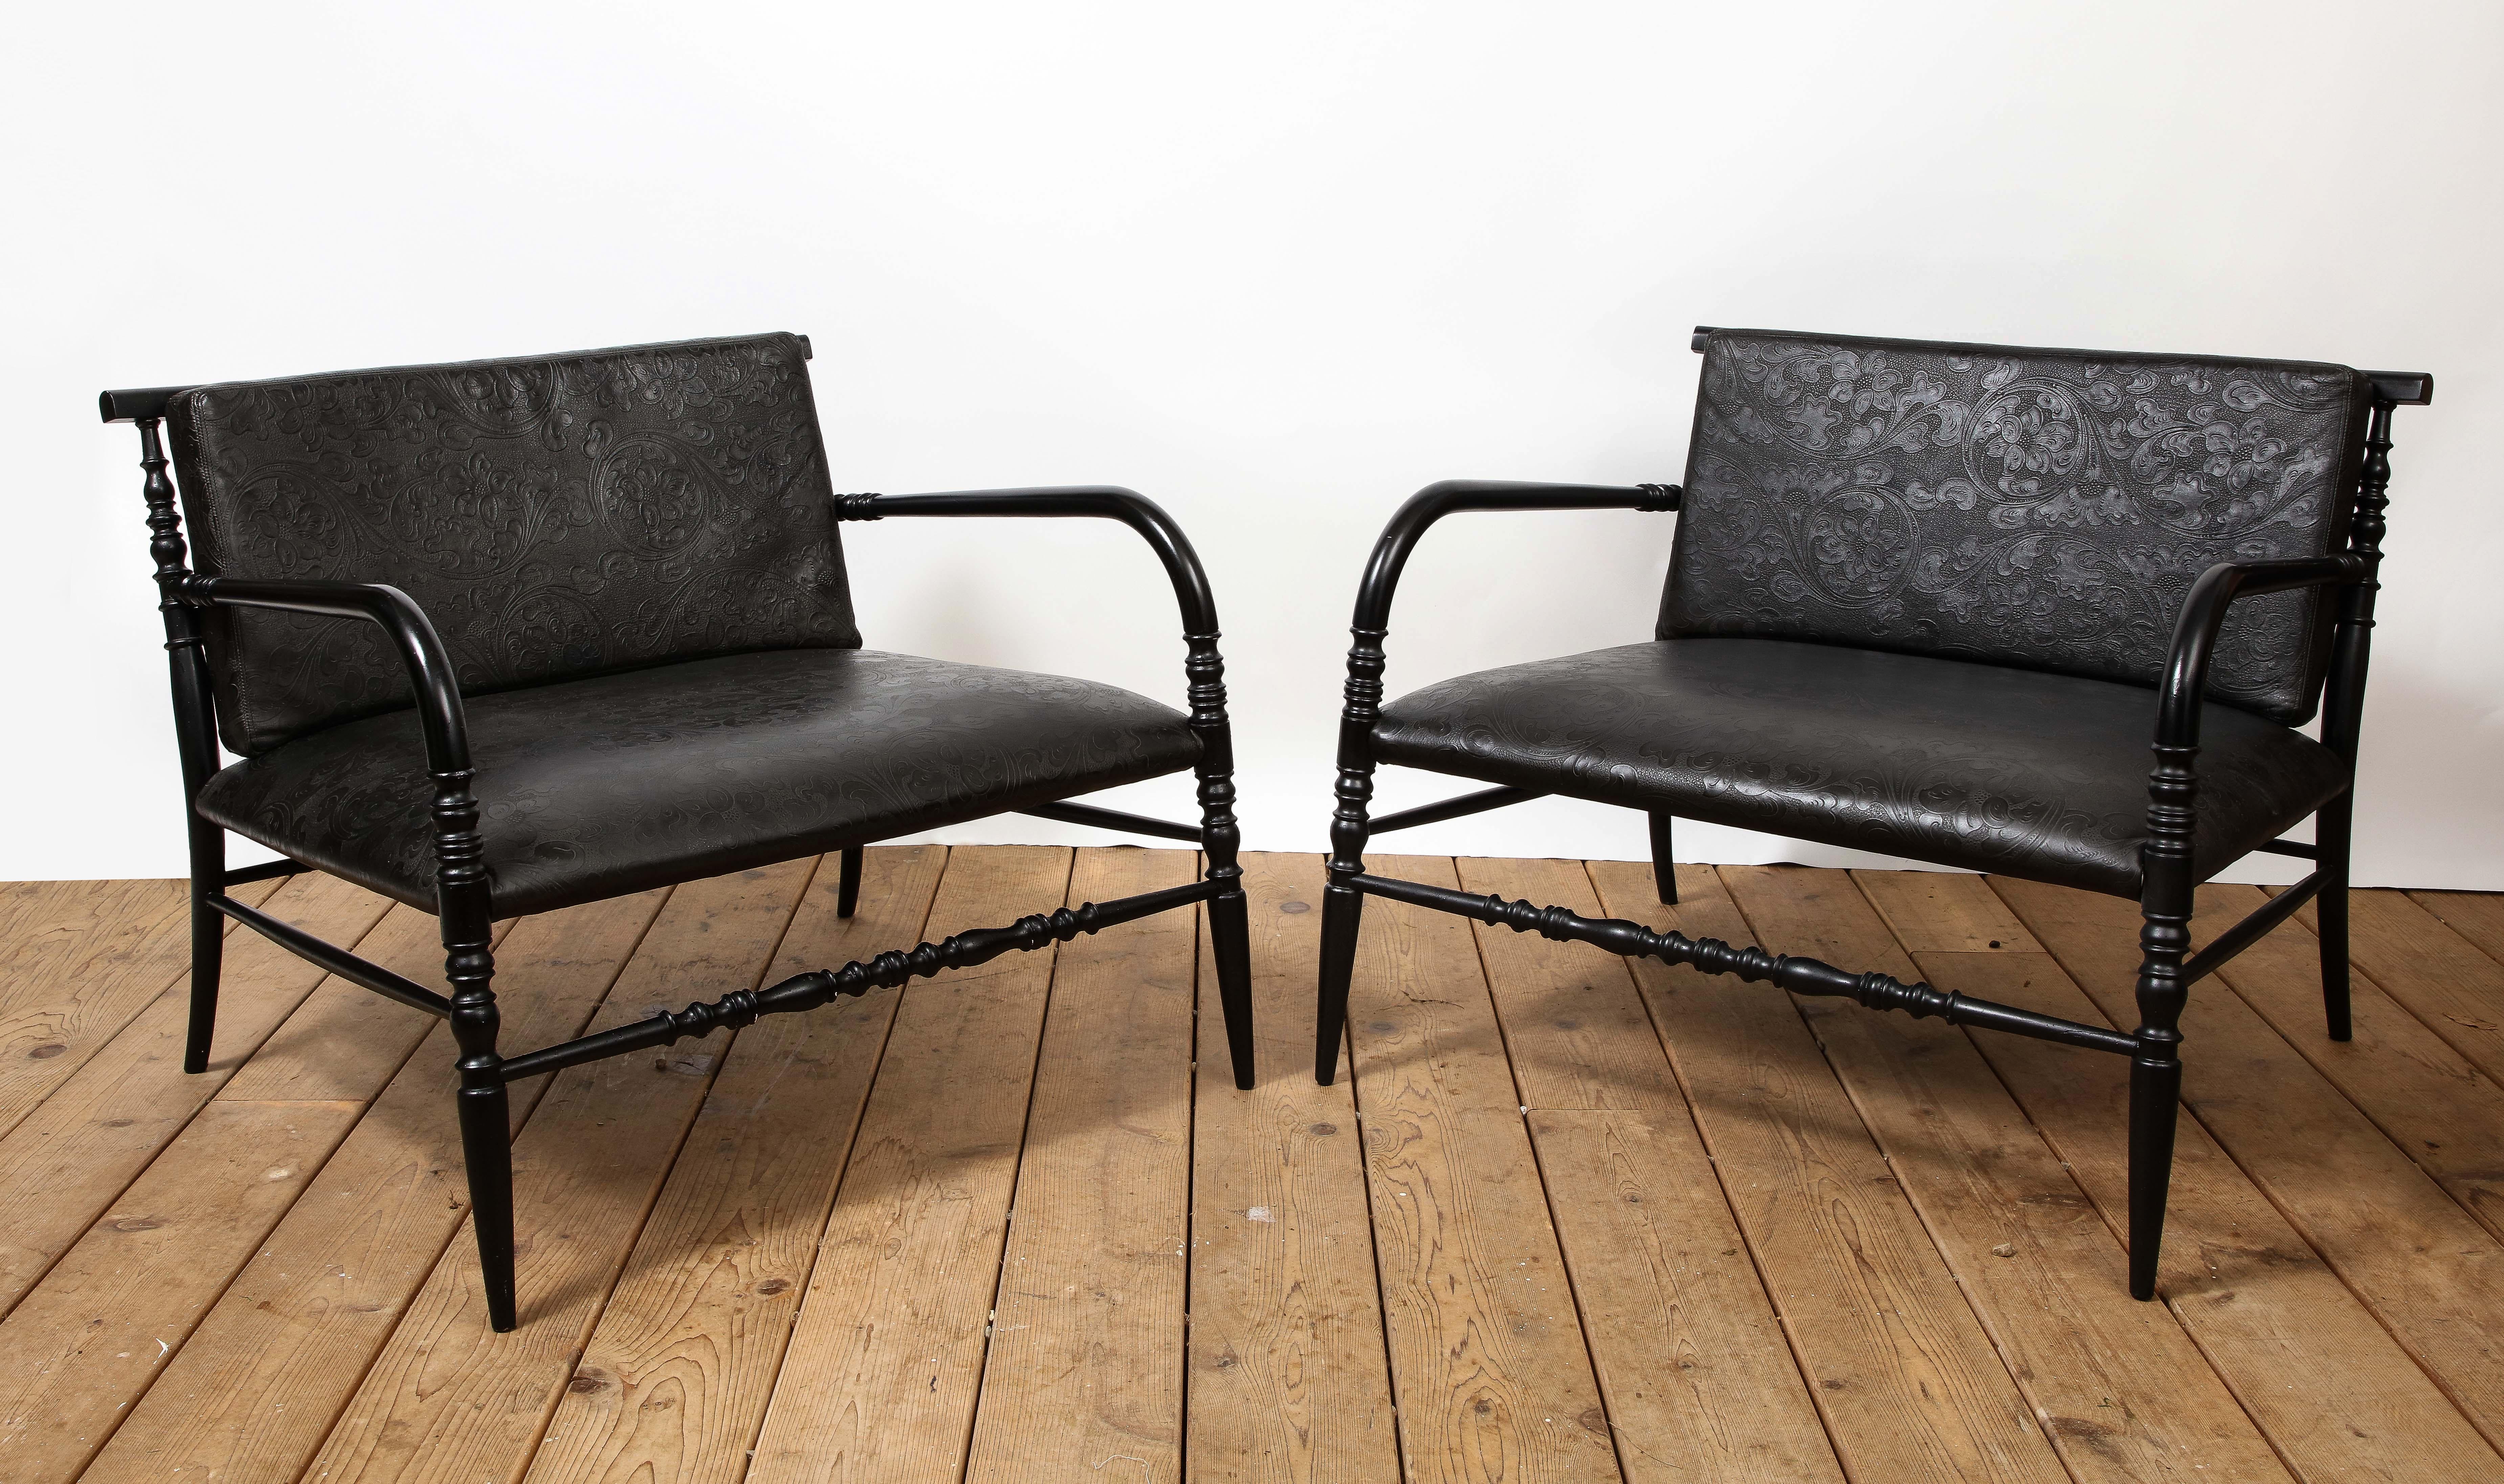 Paire de fauteuils de salon américains du 20e siècle à assise et dossier en cuir noir gaufré sur des châssis en bois tourné. 

Dimensions supplémentaires : 
AH 21